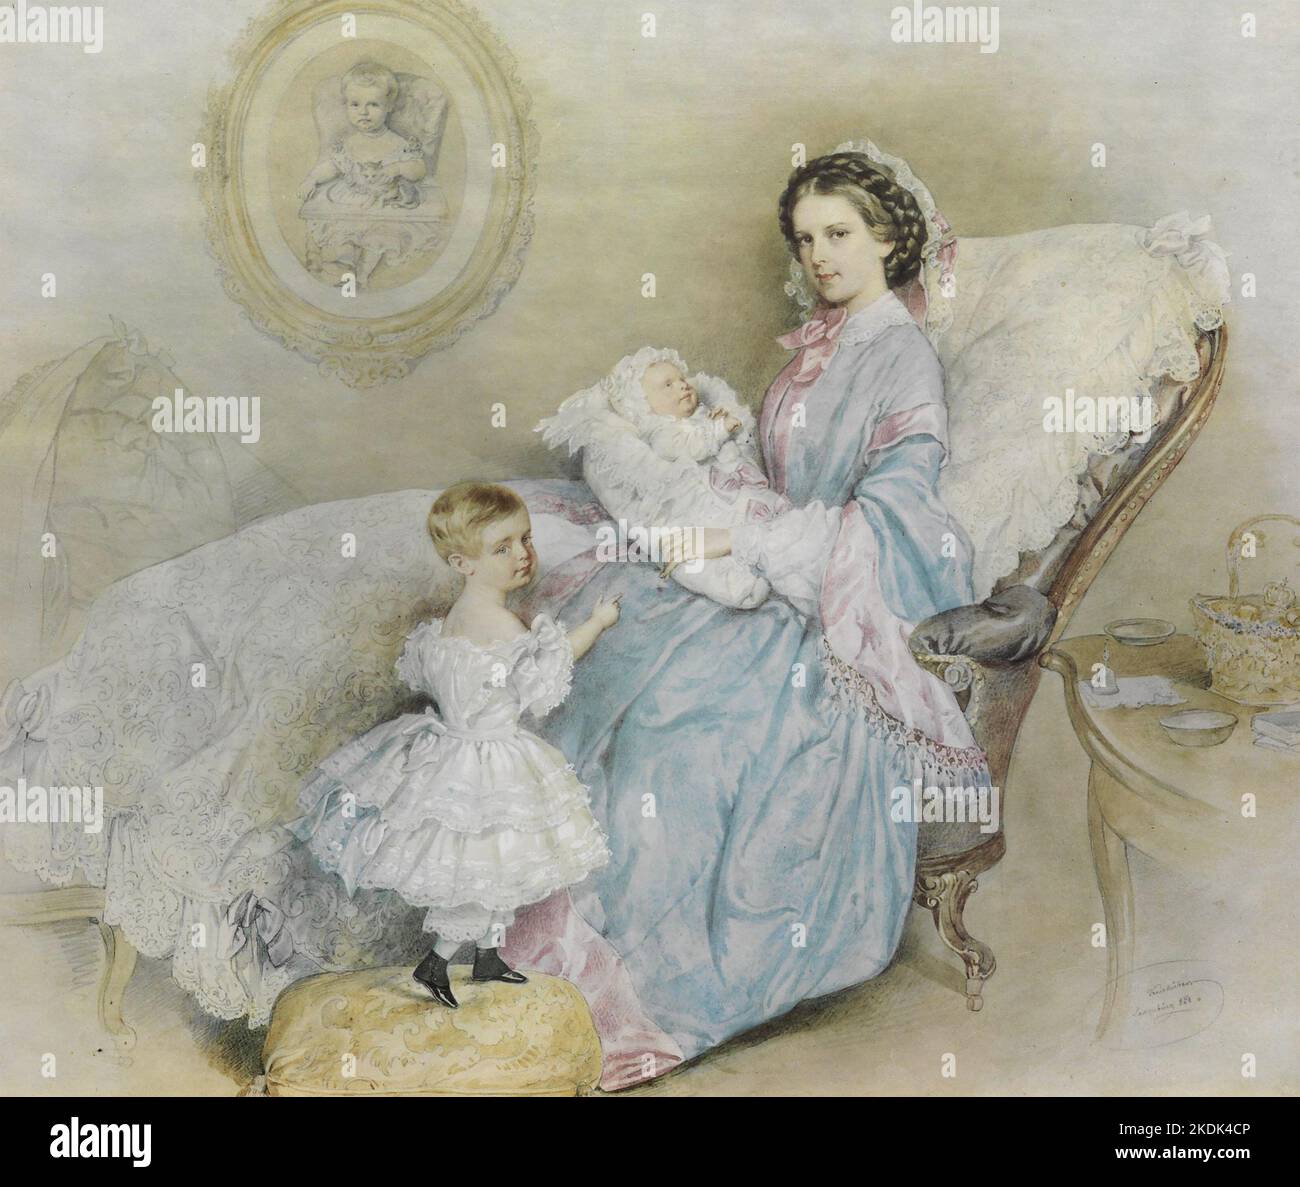 IMPERATRICE ELISABETTA D'AUSTRIA (1837-1898) con i suoi due figli nel 1858. Il ritratto sulla parete è dell'Arciduchessa Sophie Friederike Foto Stock